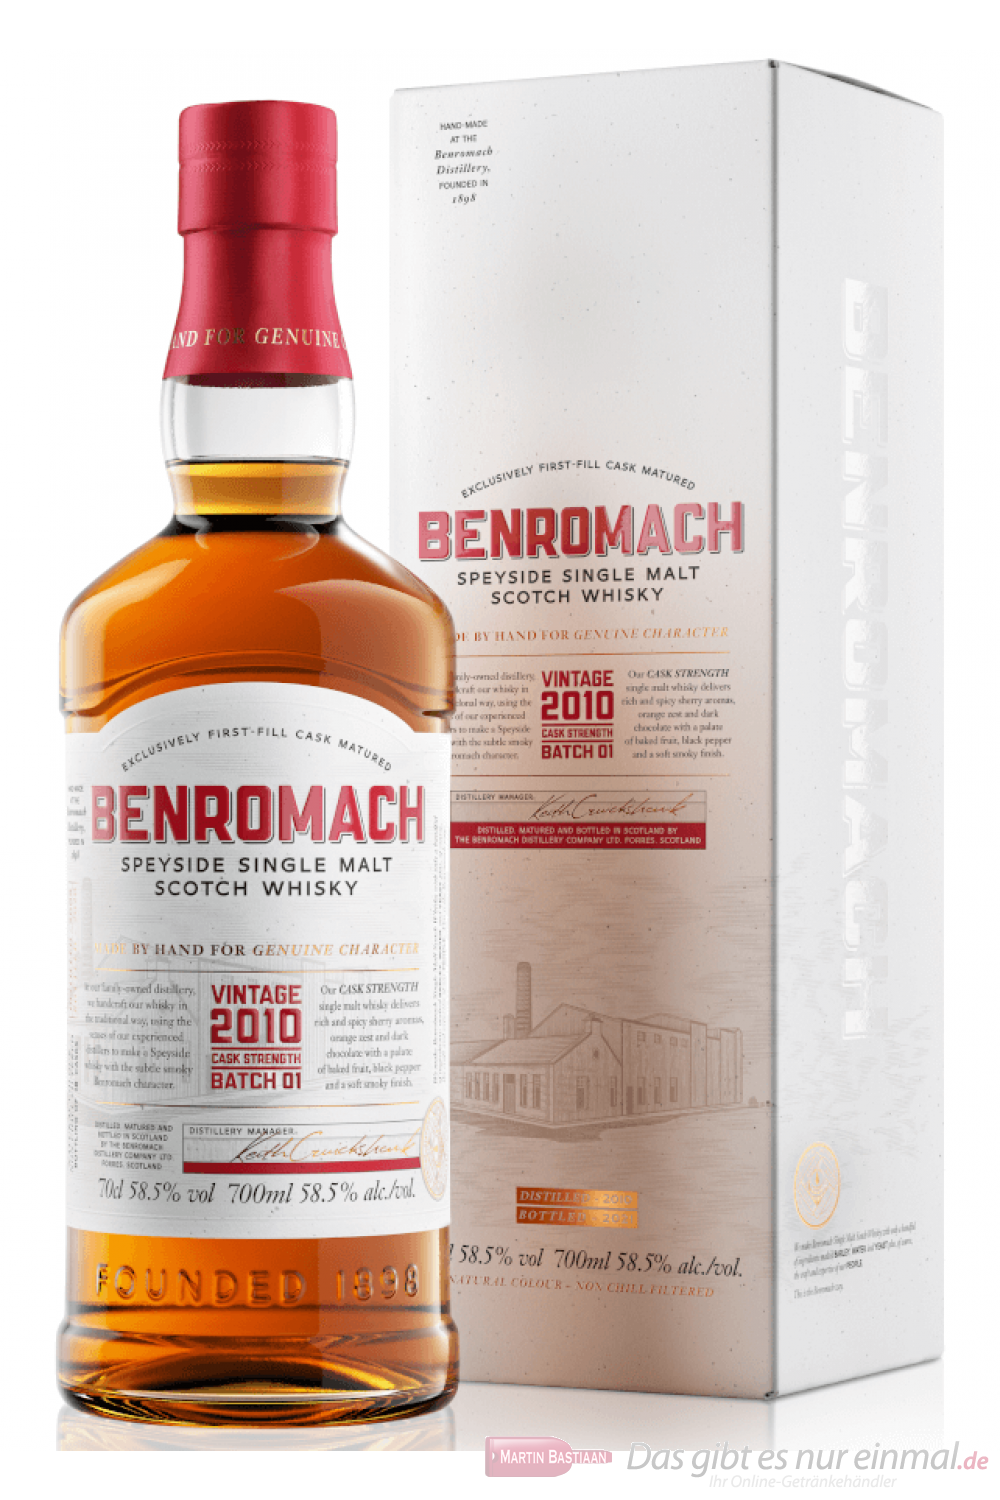 Benromach Vintage 2010 Cask Strength Batch 01 Scotch Whisky 0,7l